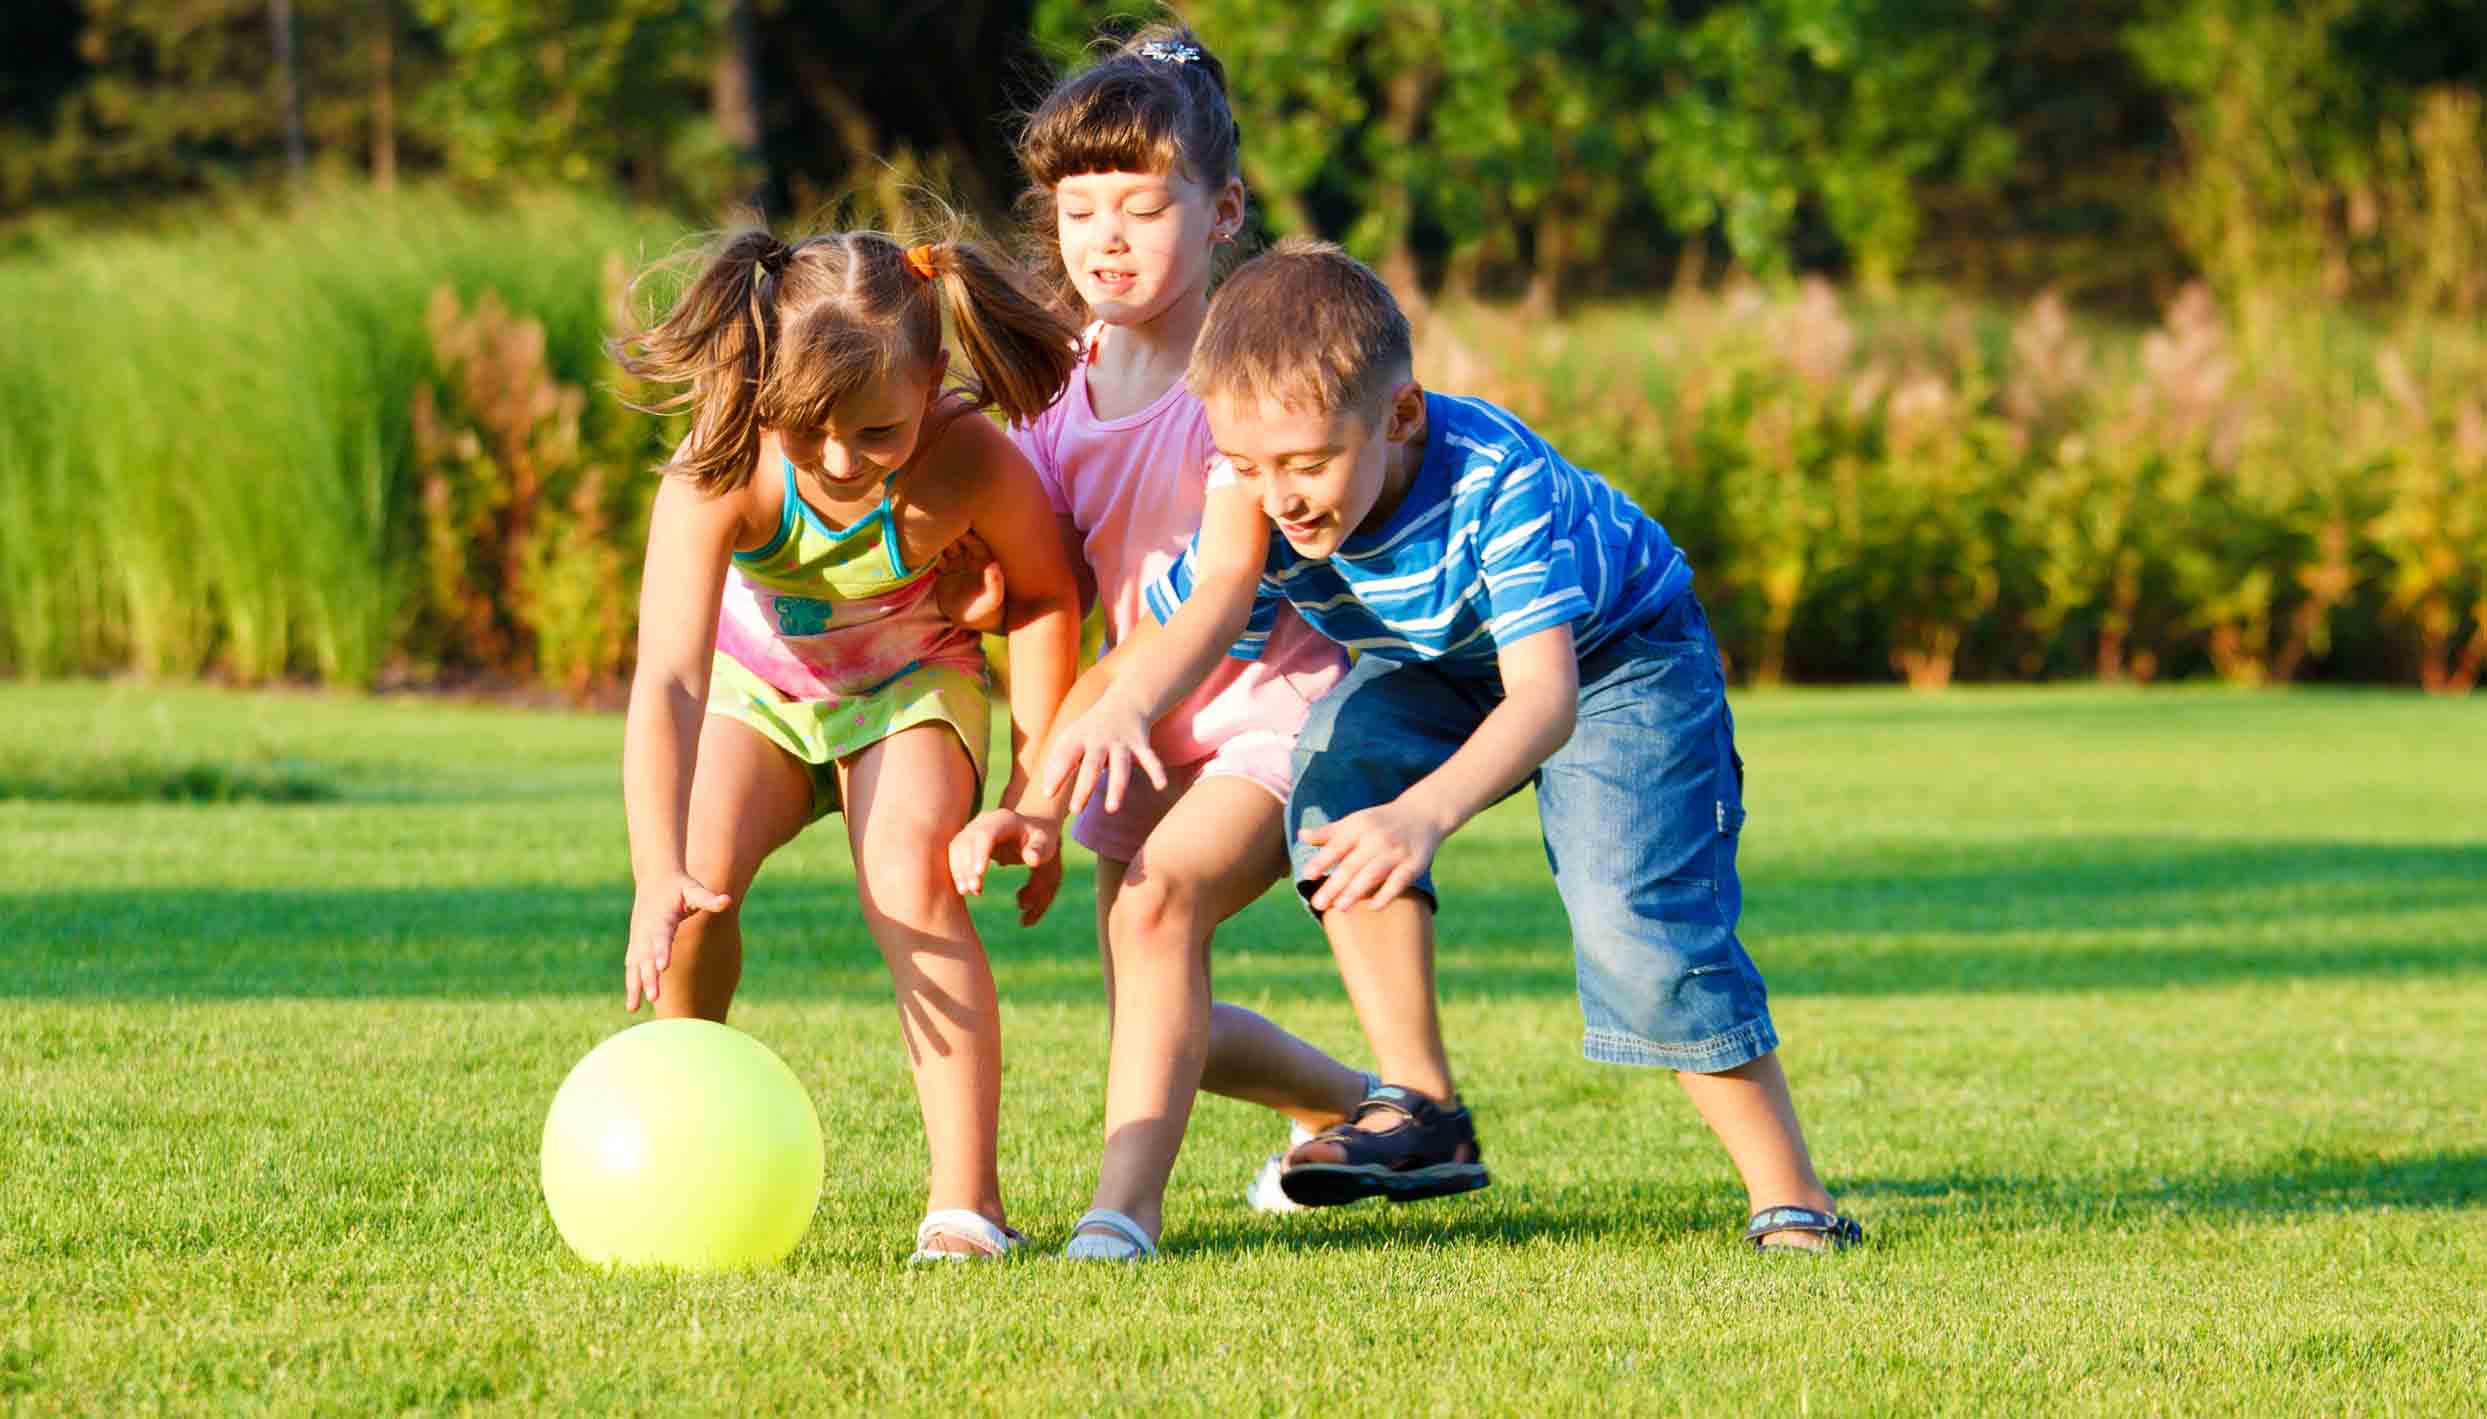 Do you enjoy playing sports. Игры на свежем воздухе для детей. Дети на свежем воздухе. Летние детские игры на свежем воздухе. Спортивные дети.